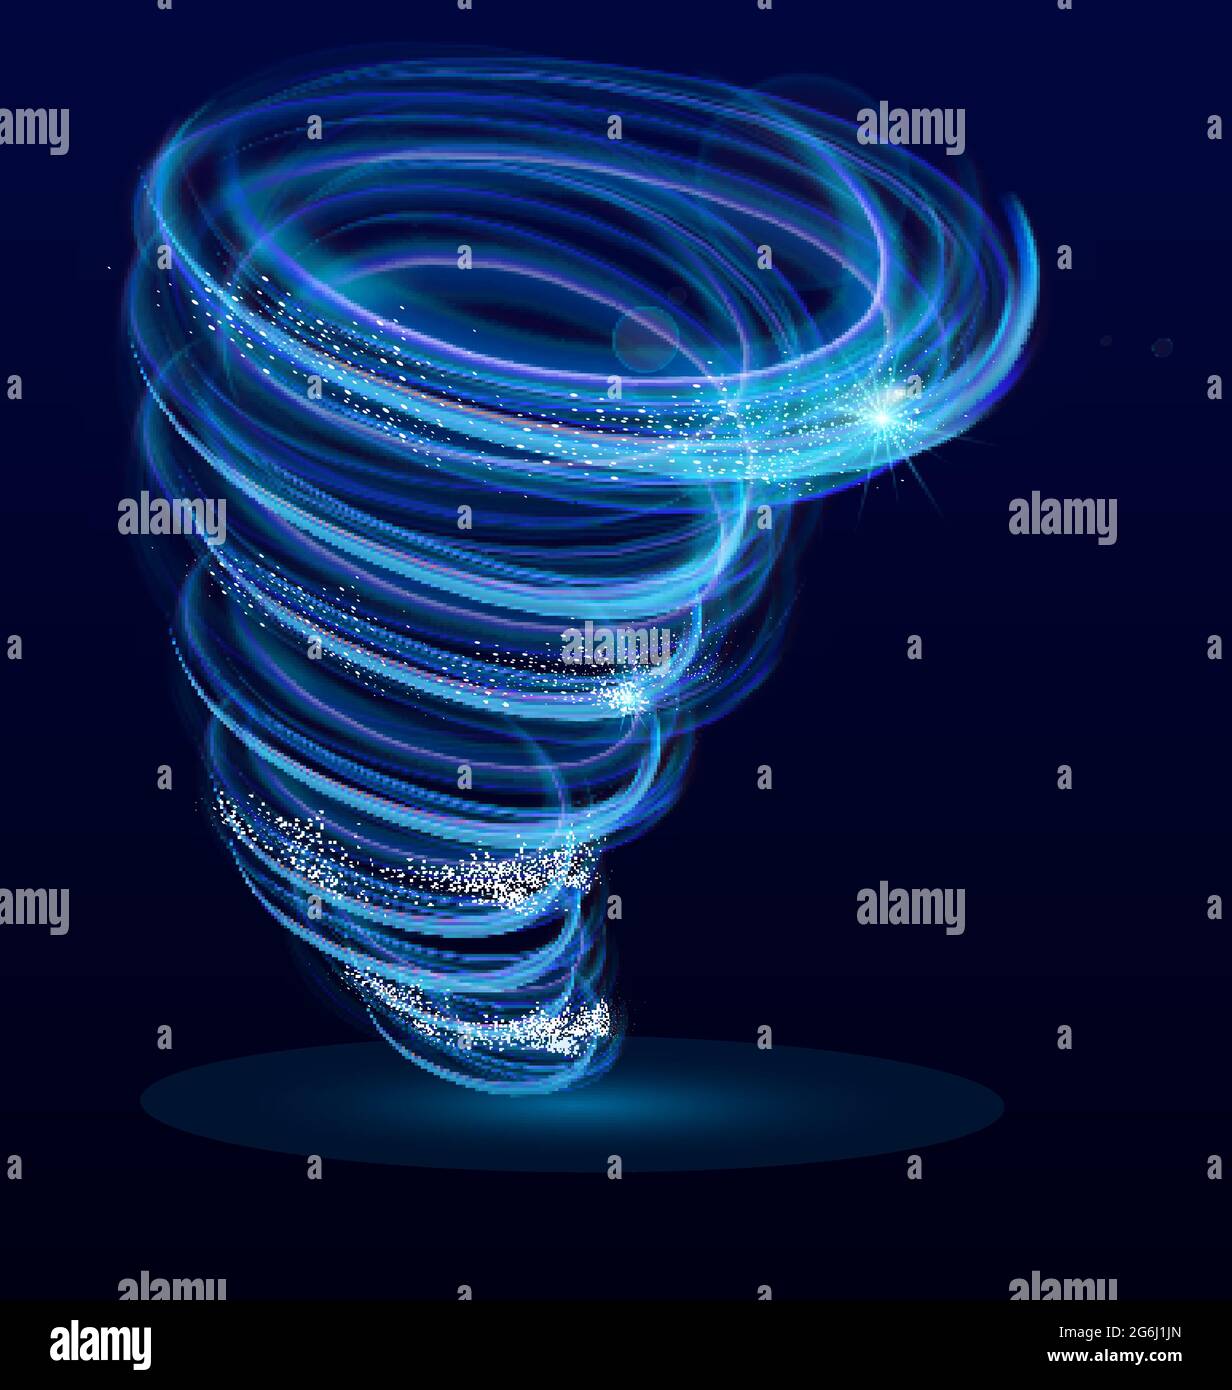 Illustration vectorielle de l'effet vectoriel de tourbillons lumineux, tourbillons, tornades lumineuses. Le typhon tourbillonnait, ouragan léger sur fond bleu foncé Illustration de Vecteur